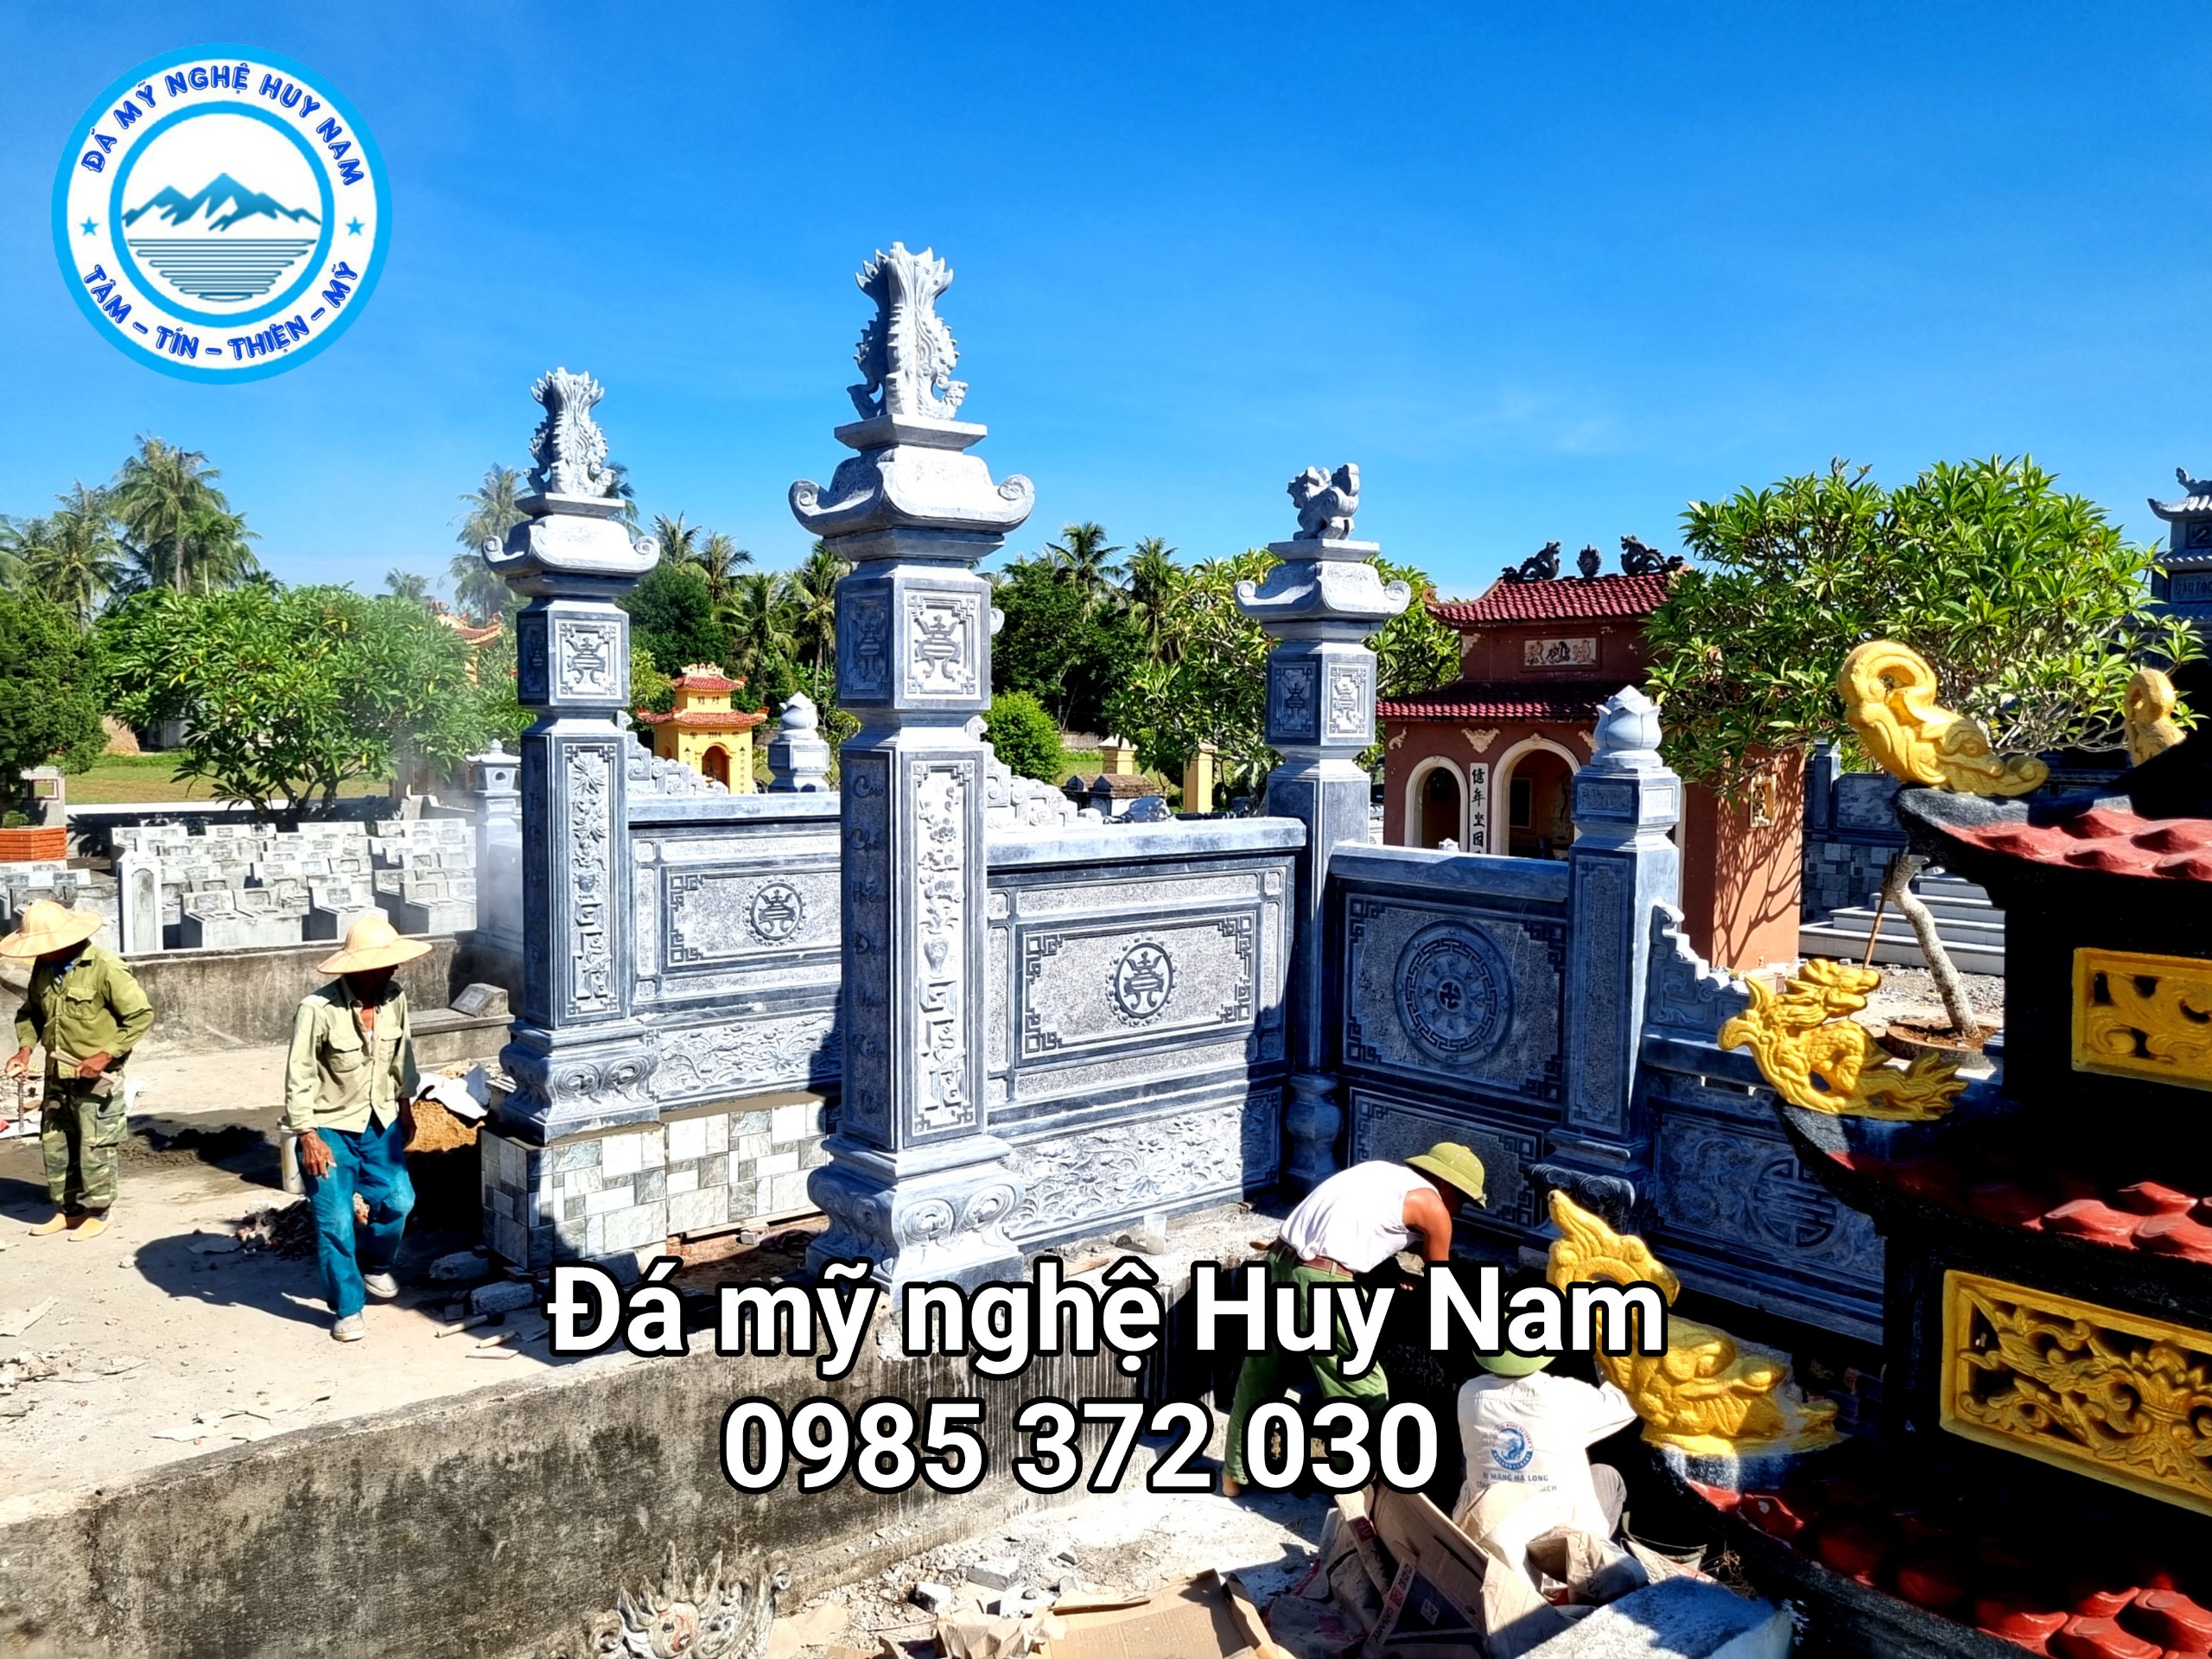 Chi Ho Dau Vinh Lai tai xa Dien Phong Dien Chau Nghe An. 14